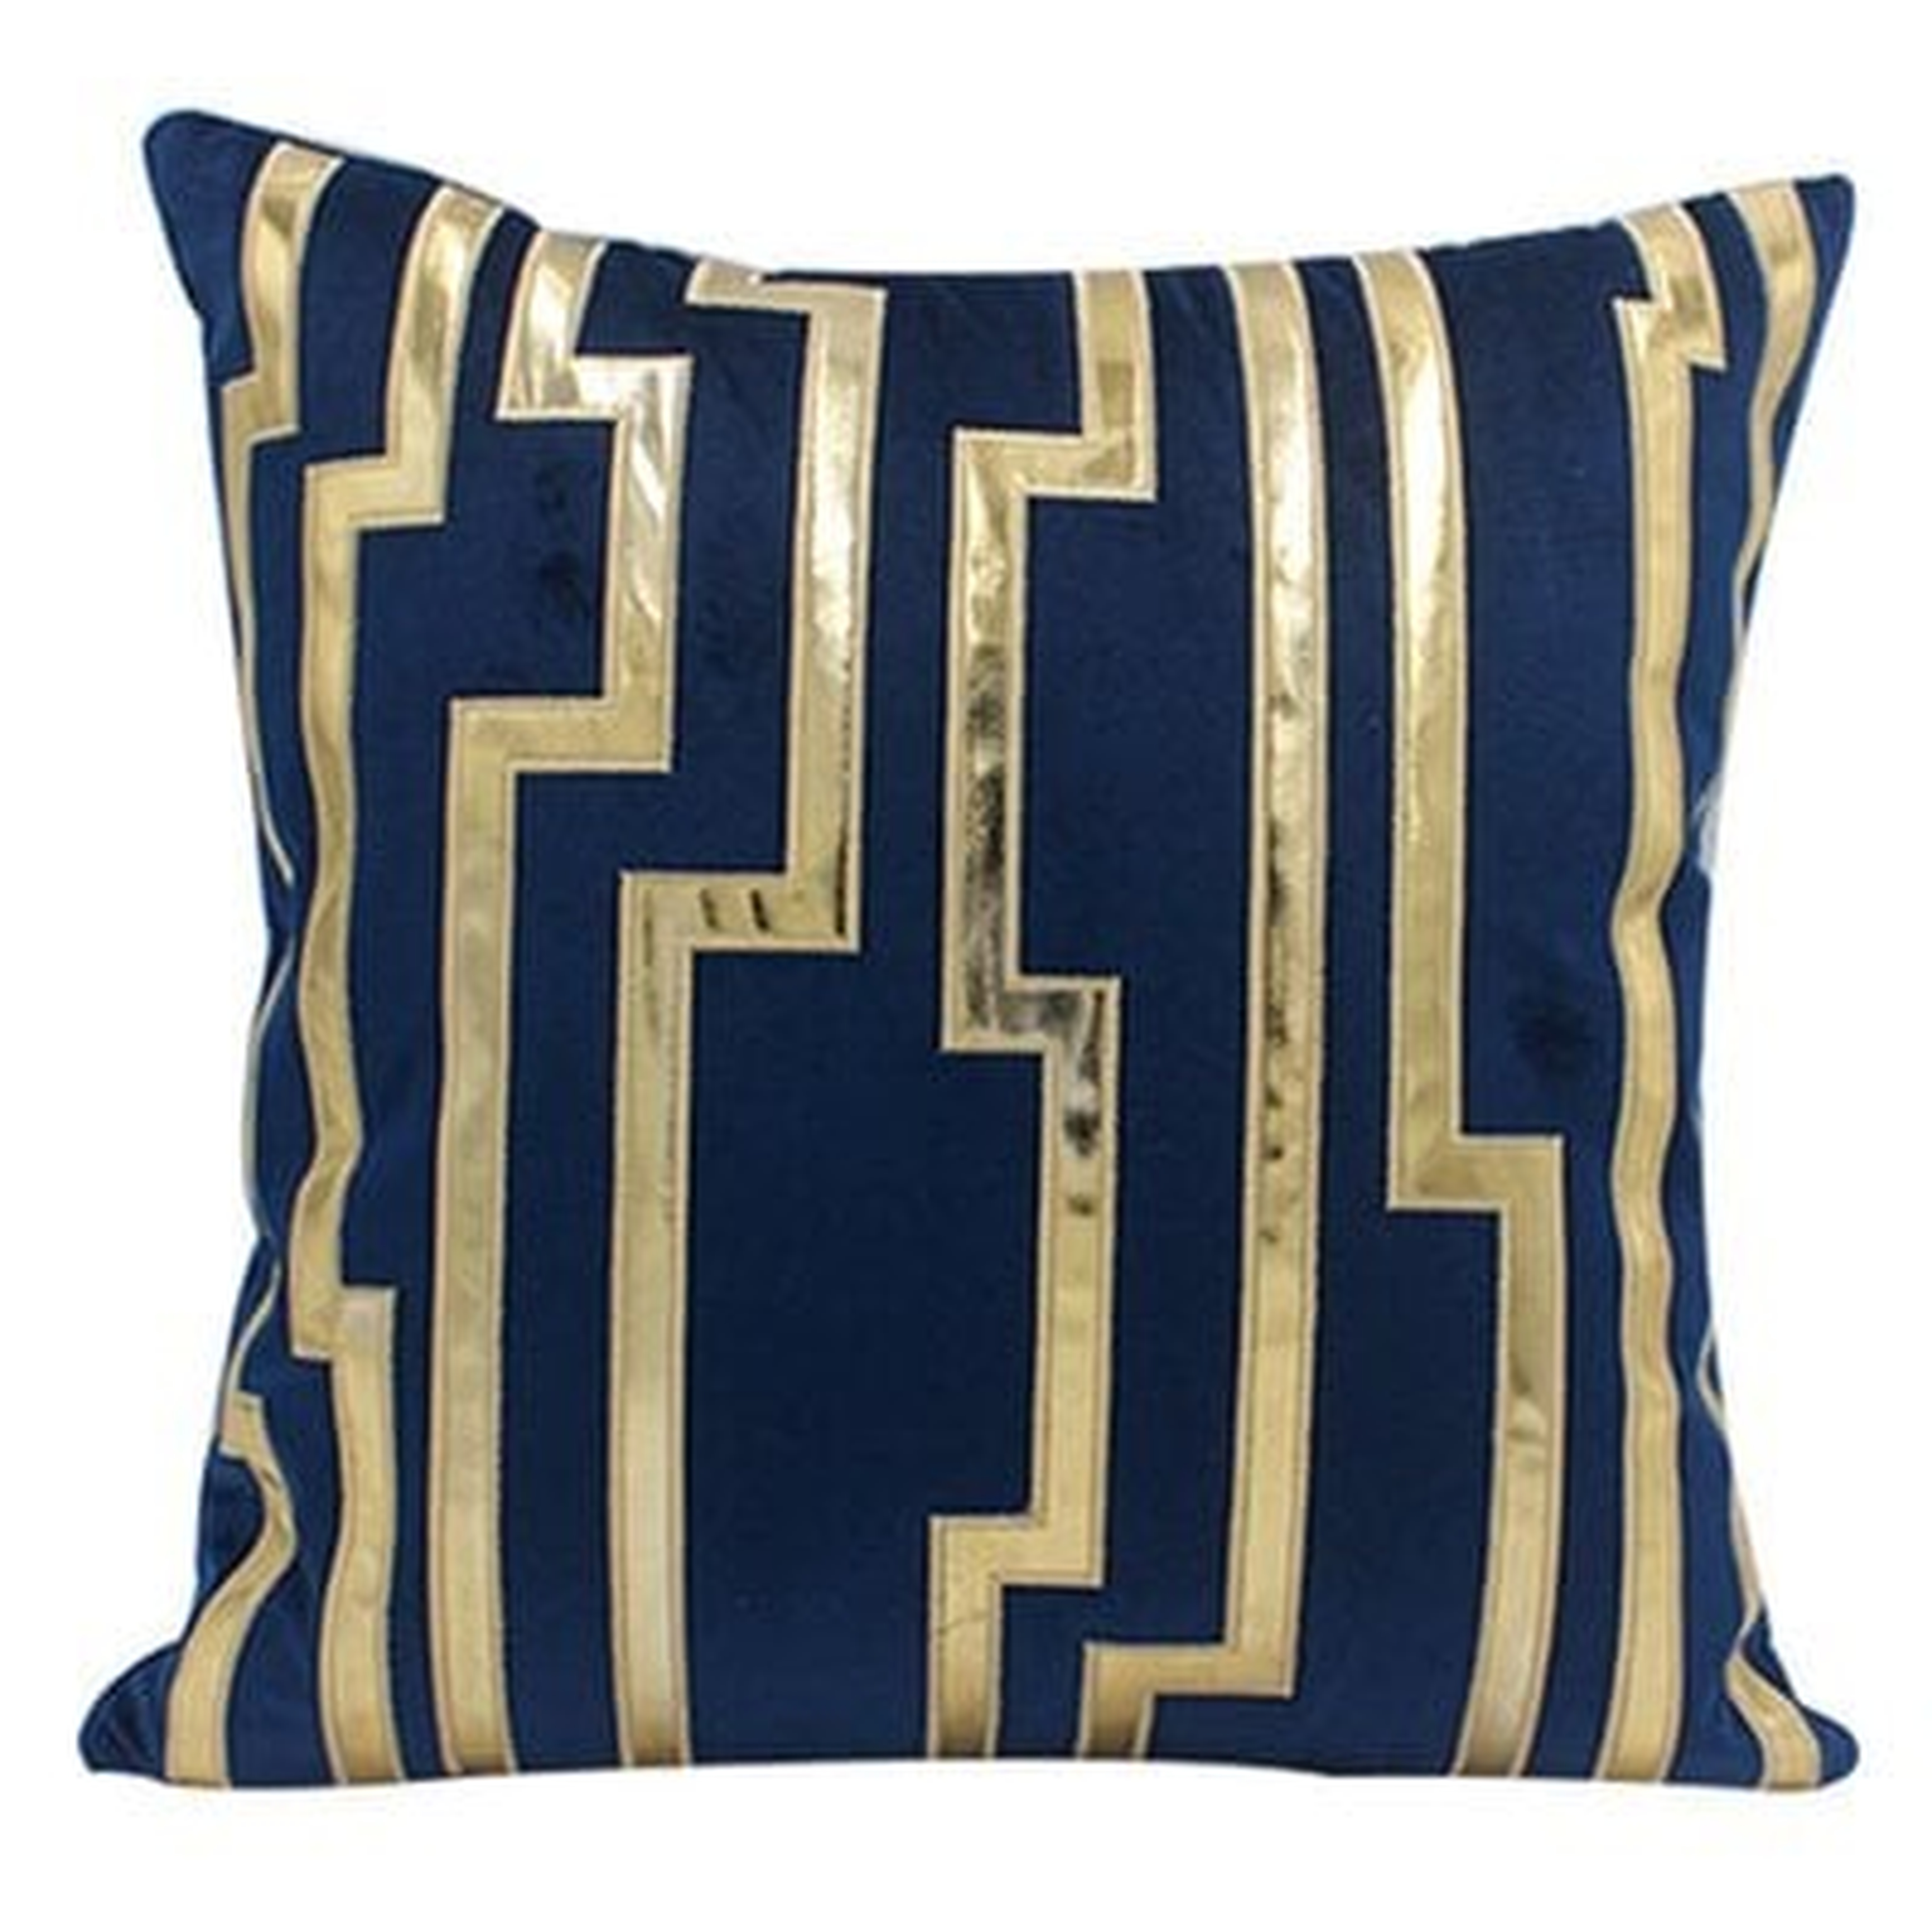 Advika Embroidered Velvet Throw Pillow Cover - Wayfair